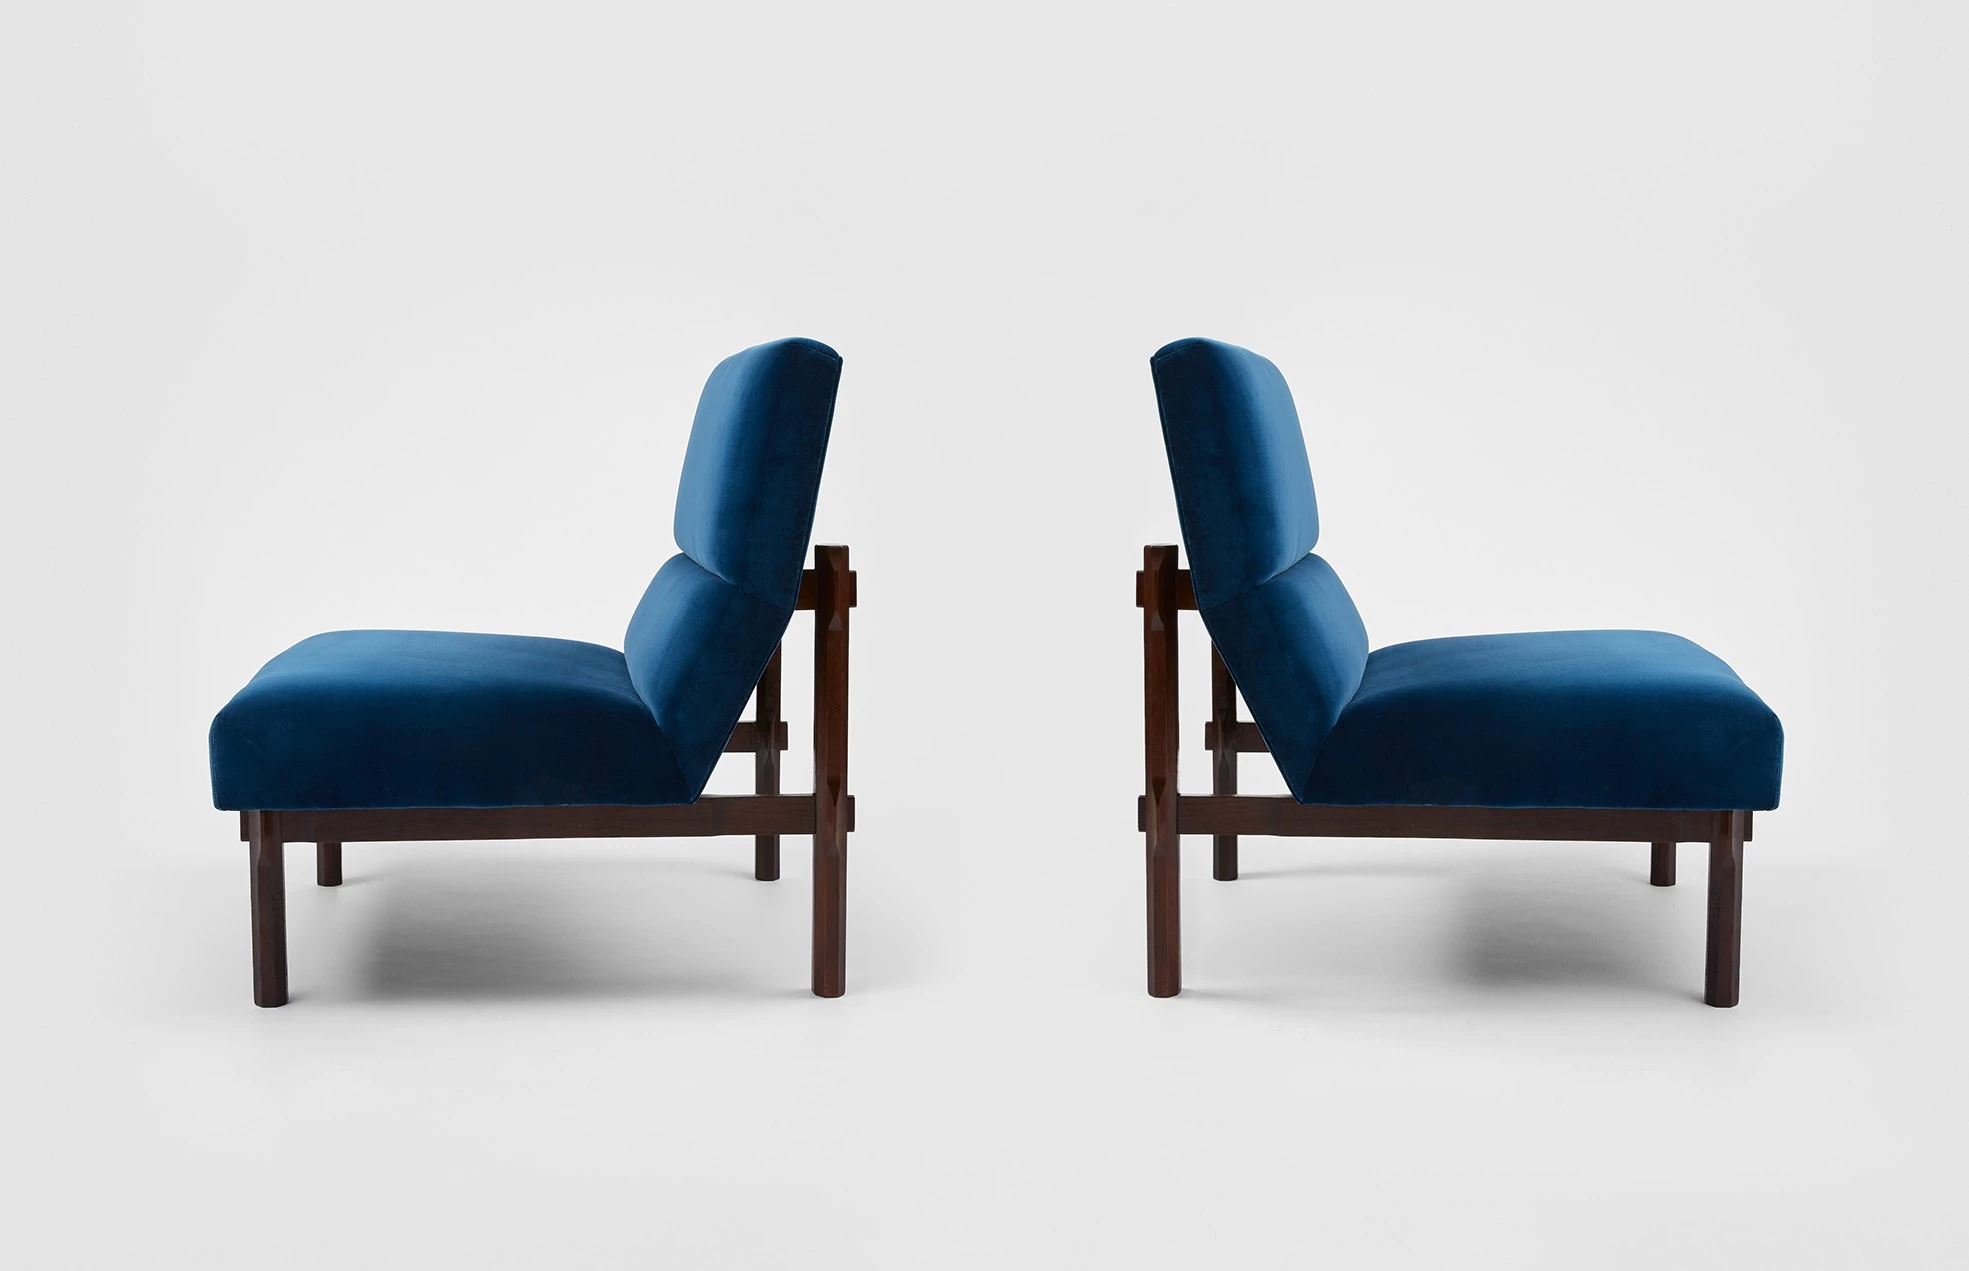 Armchair model n°869 - Ico & Luisa Parisi  - Seating - Galerie kreo